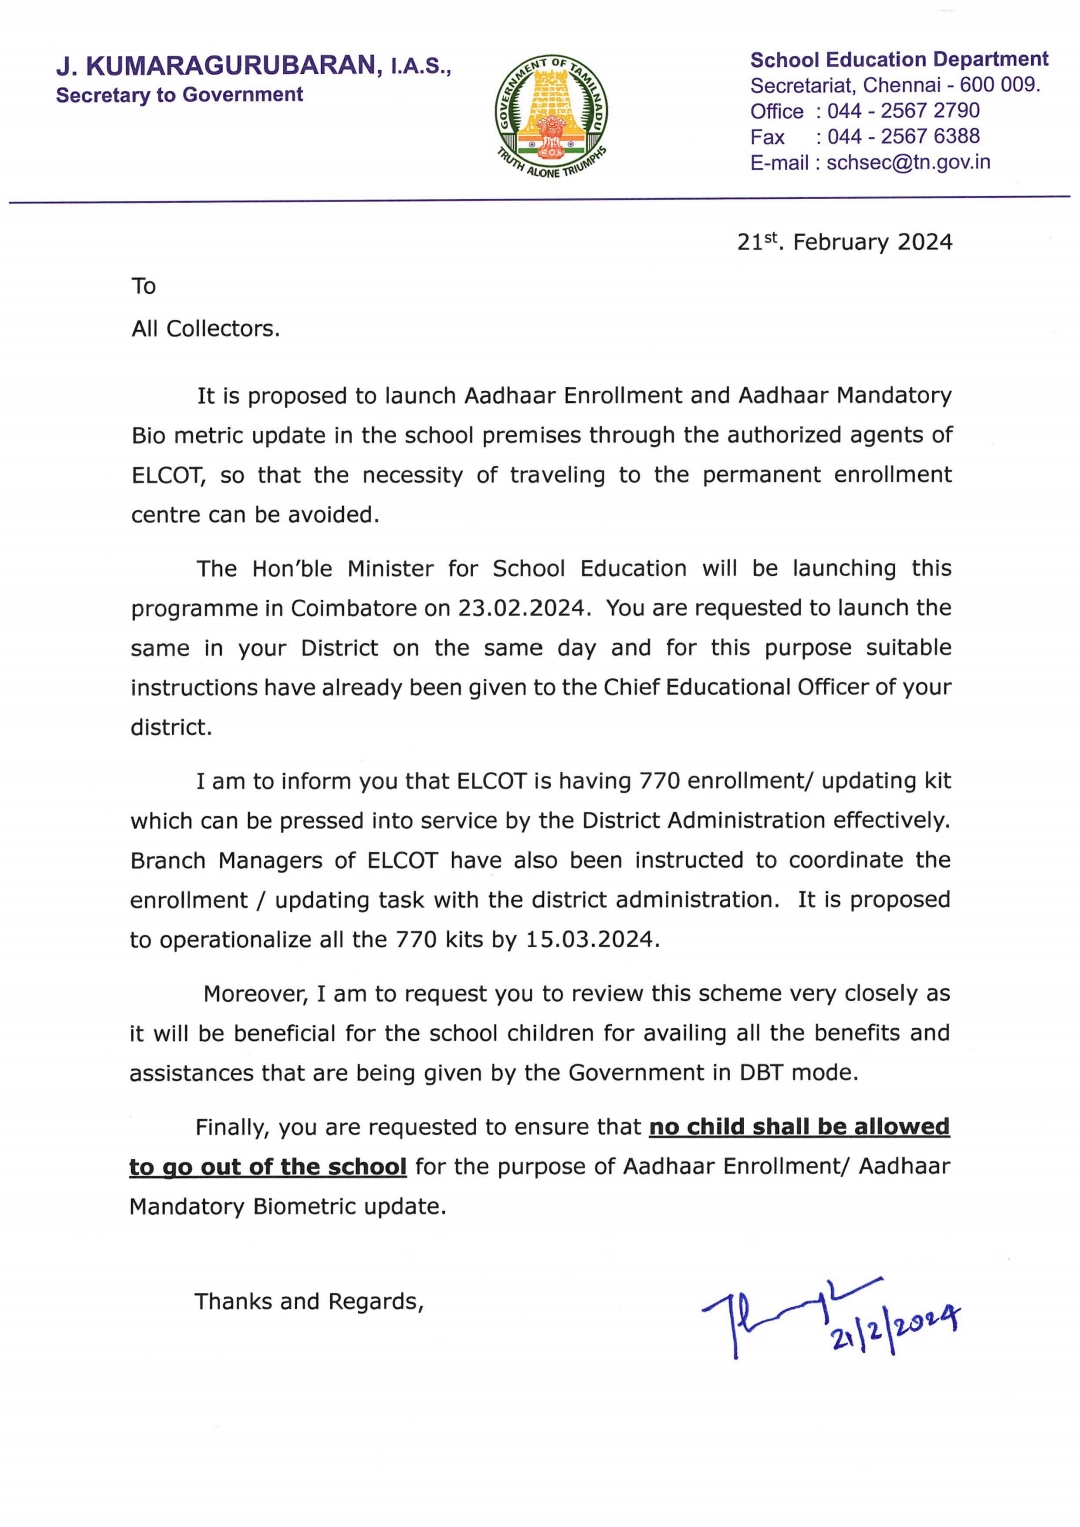 school education principal secretary ordered that students should register aadhaar in schools